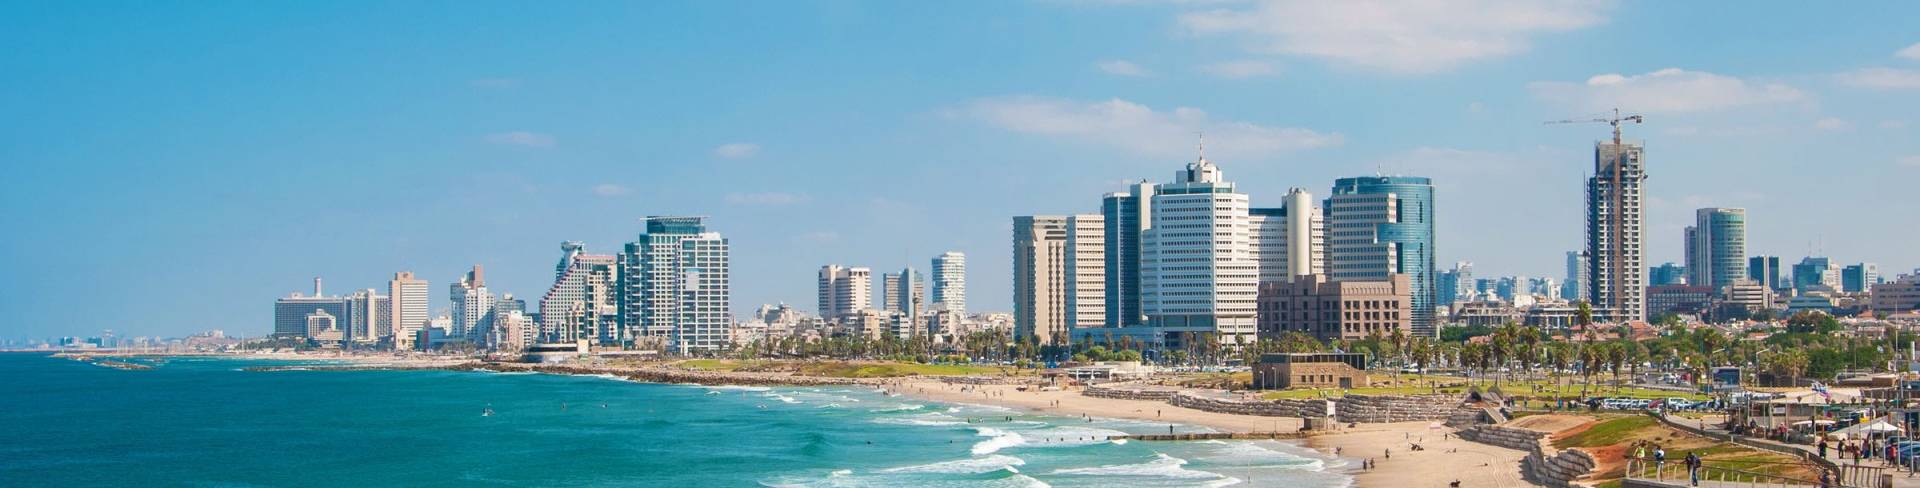 Тель-Авив - город курорт в Израиле